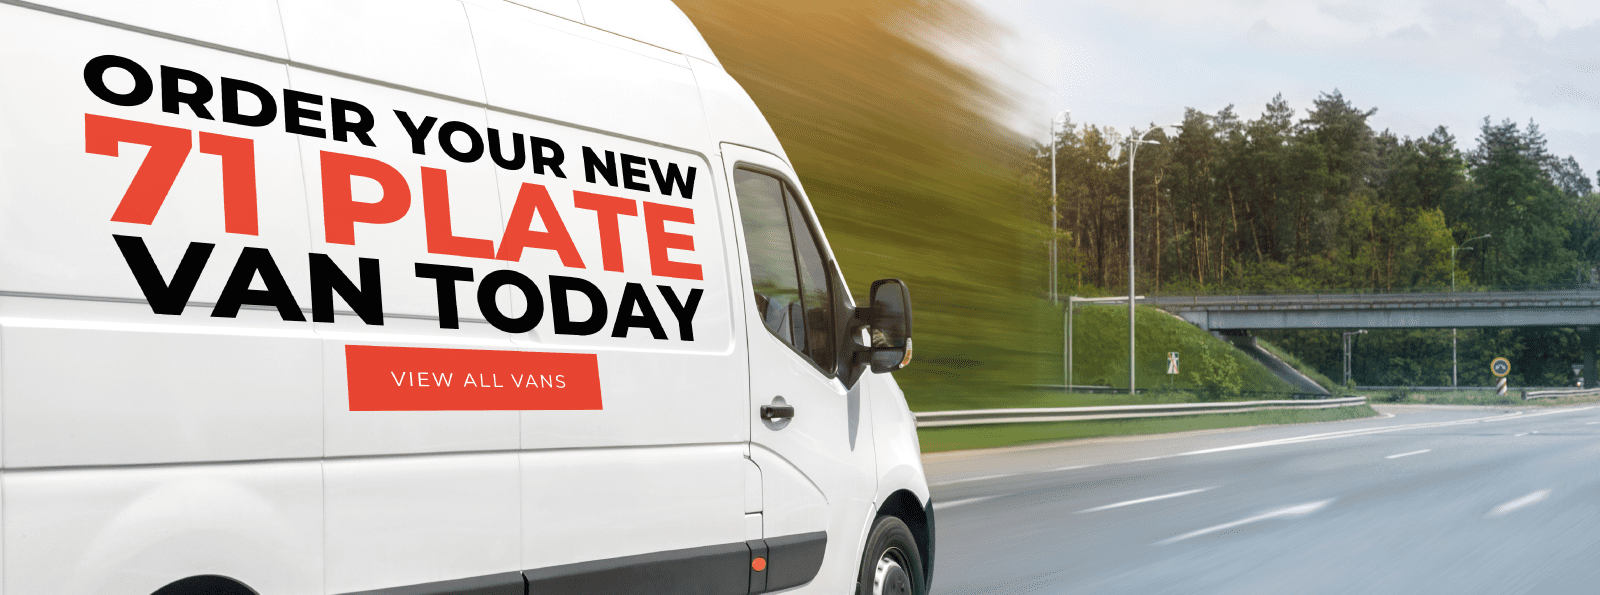 new vans online uk